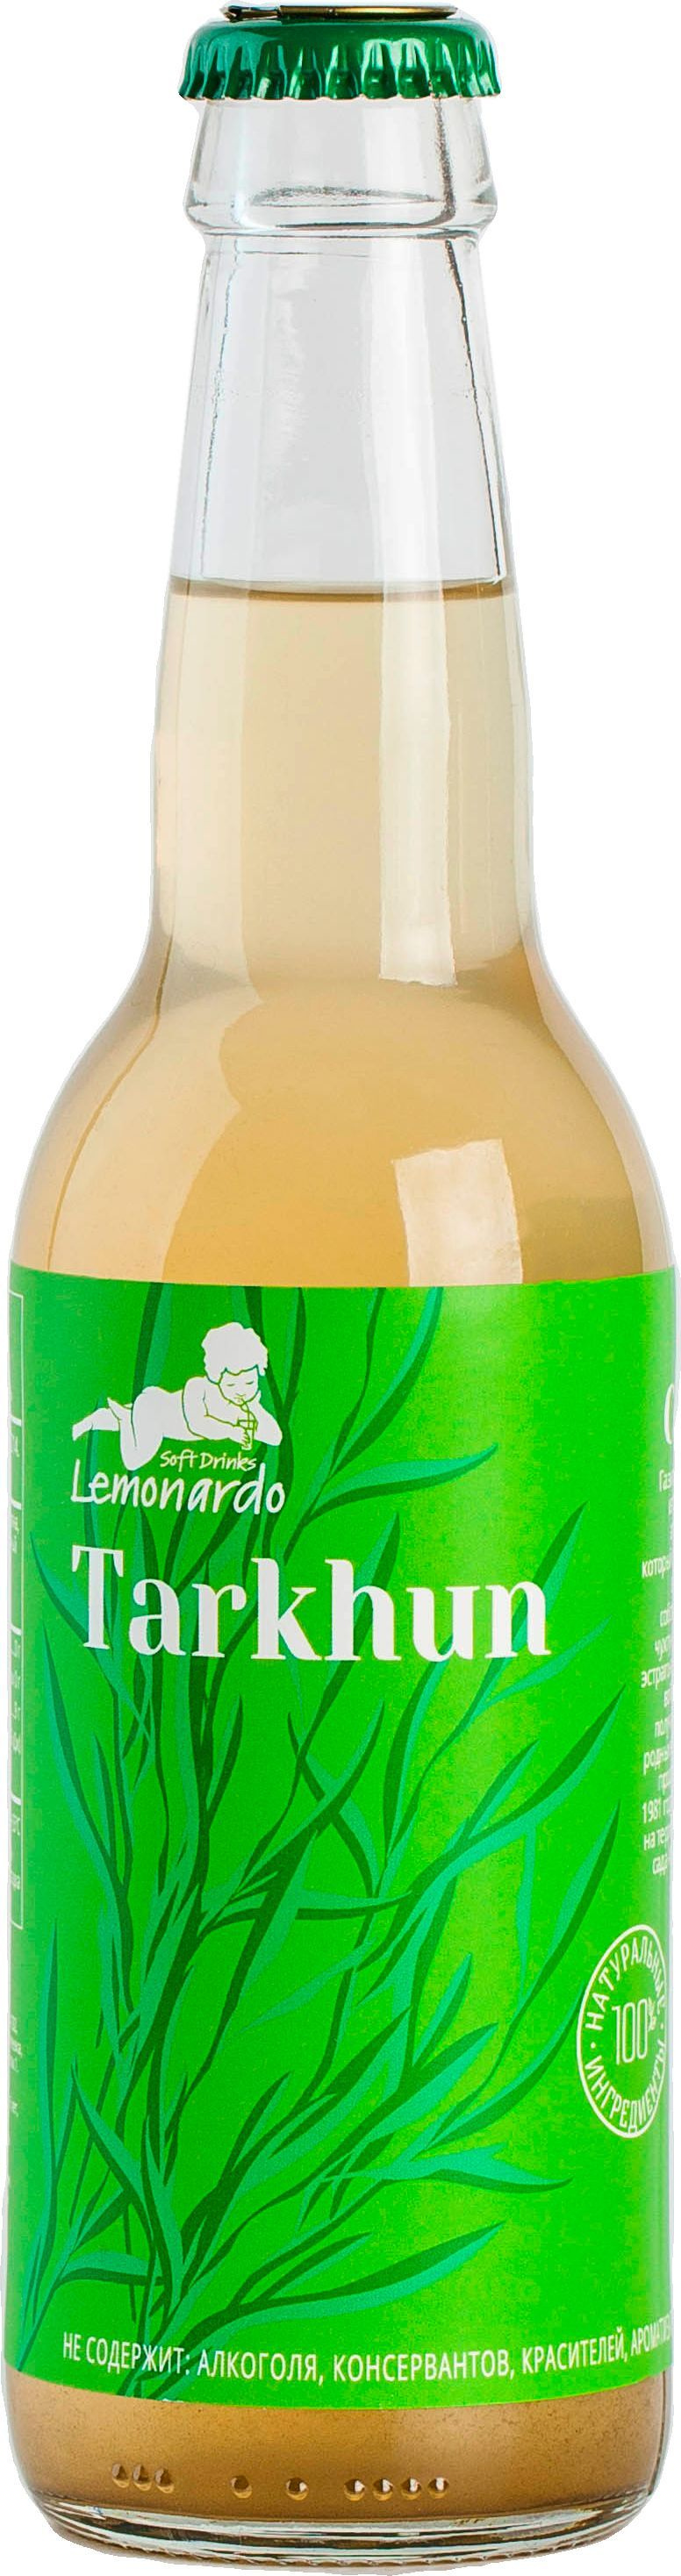 Тархун без сахара / Lemonardo Tarkhun, 330мл.